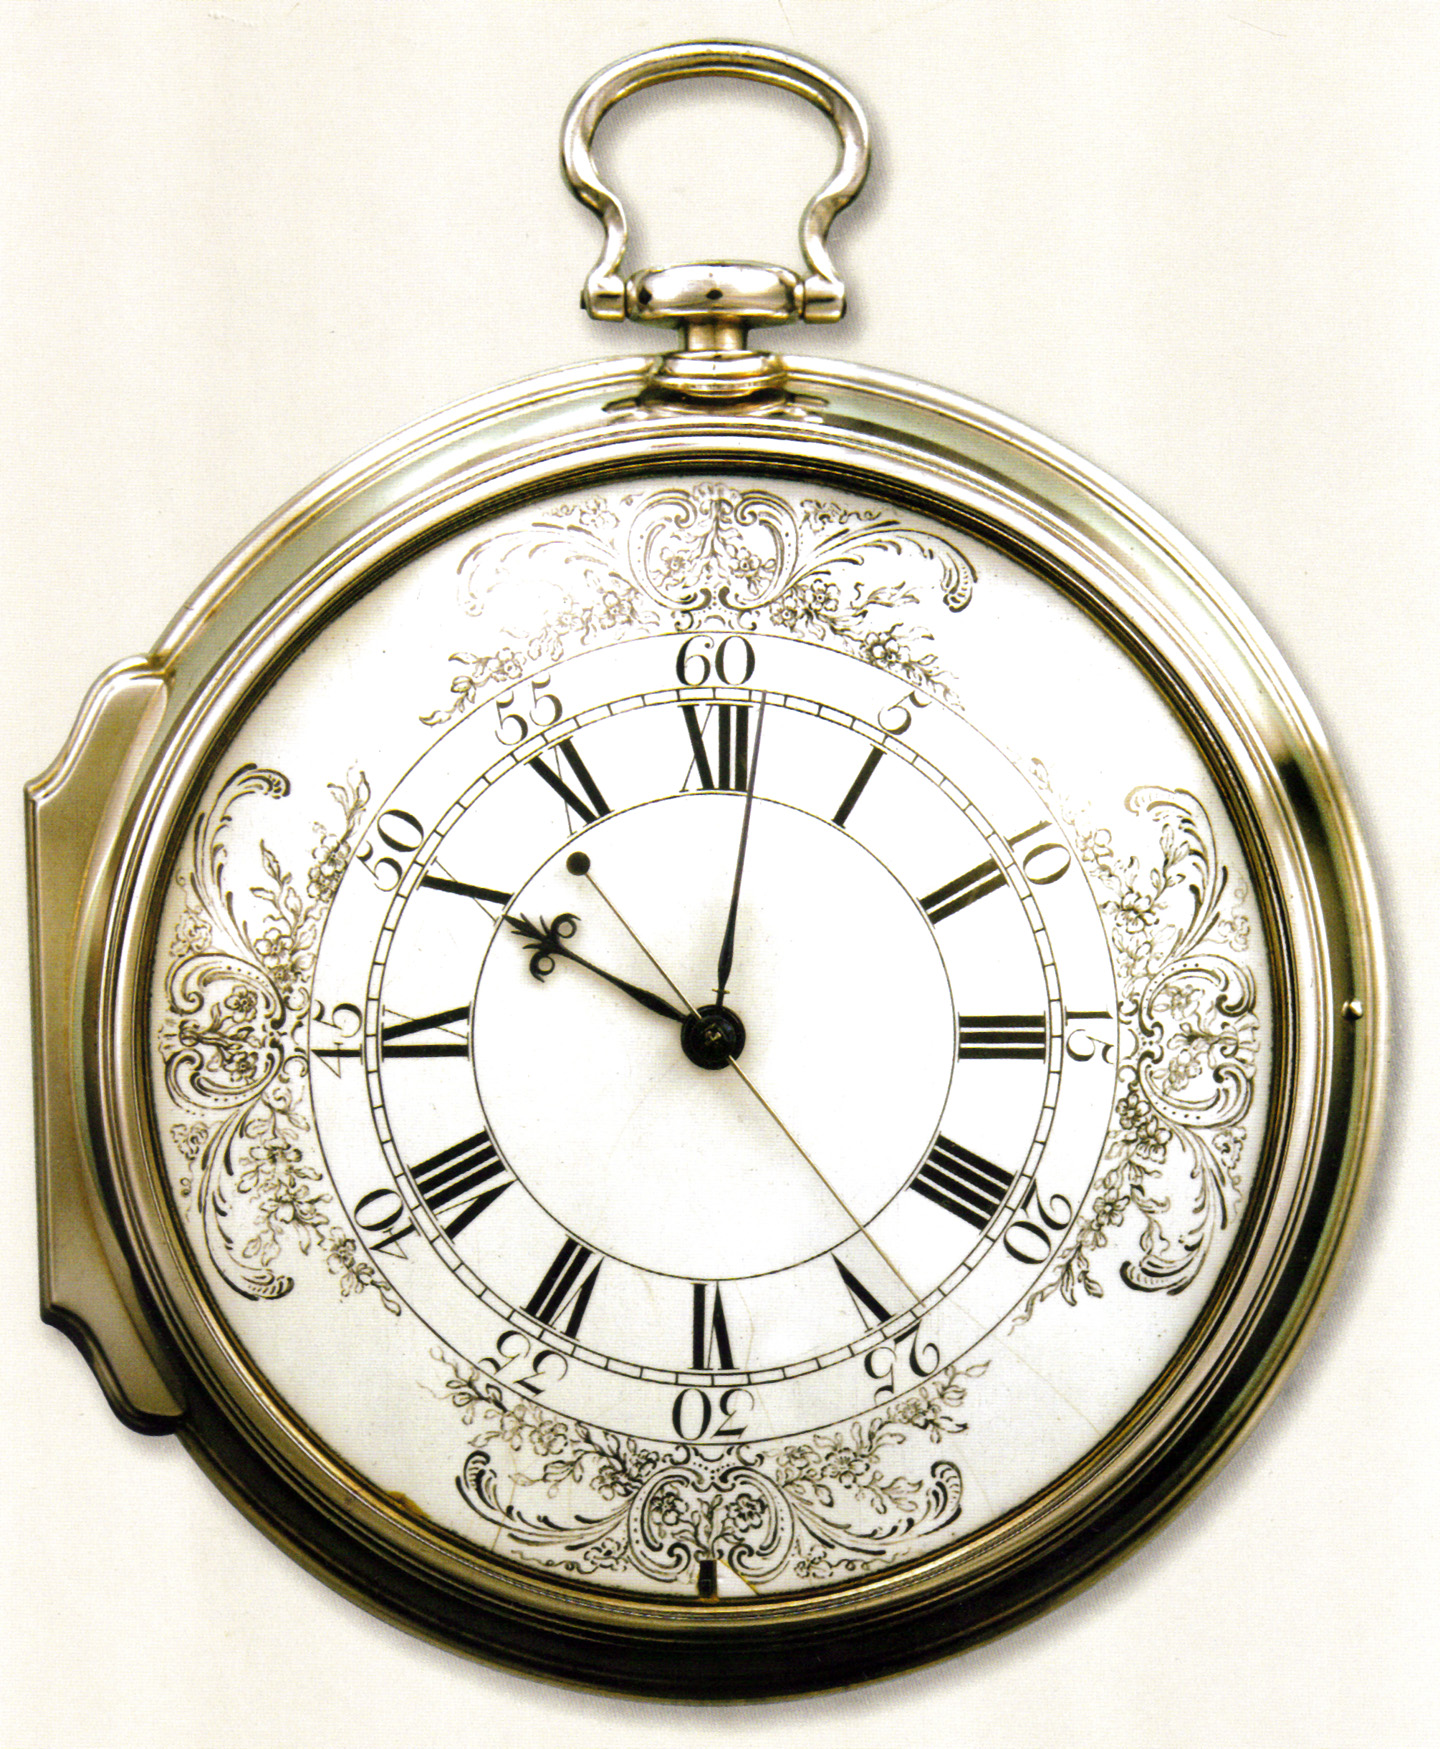 harrisons-h4-chronometer-1760-1440.jpg